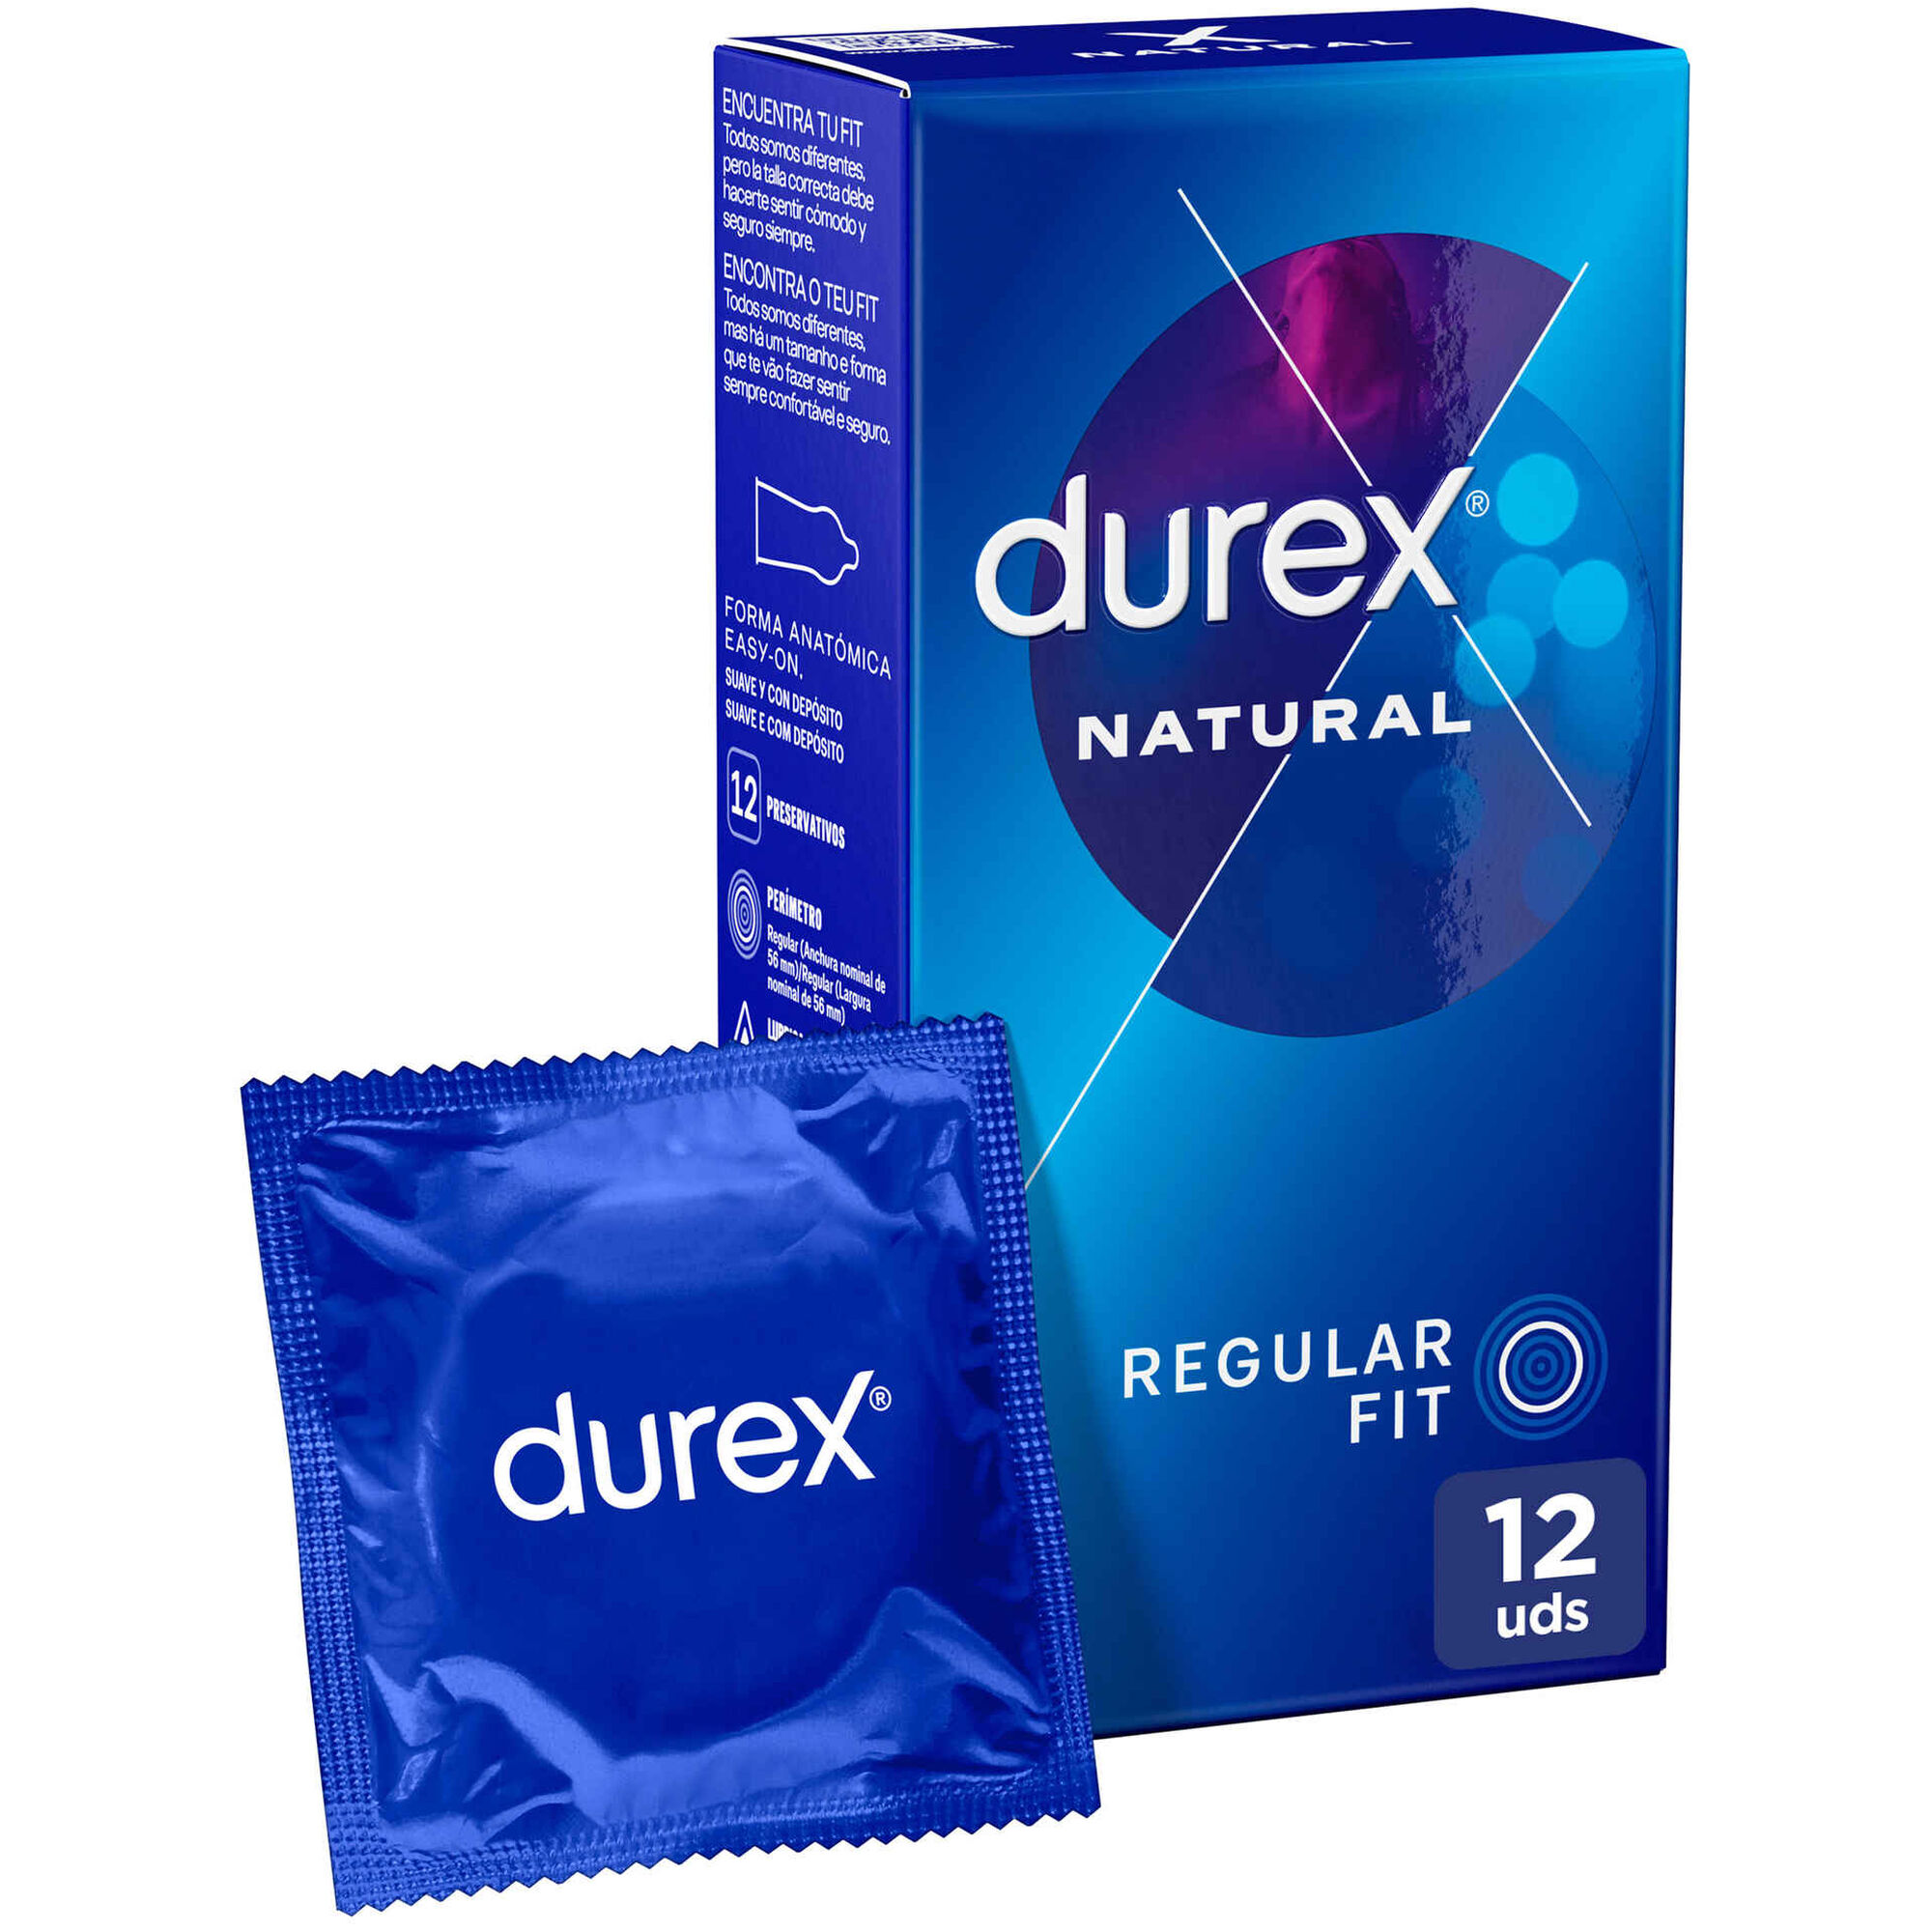 Preservativos Natural Comfort - emb. 12 un - Durex